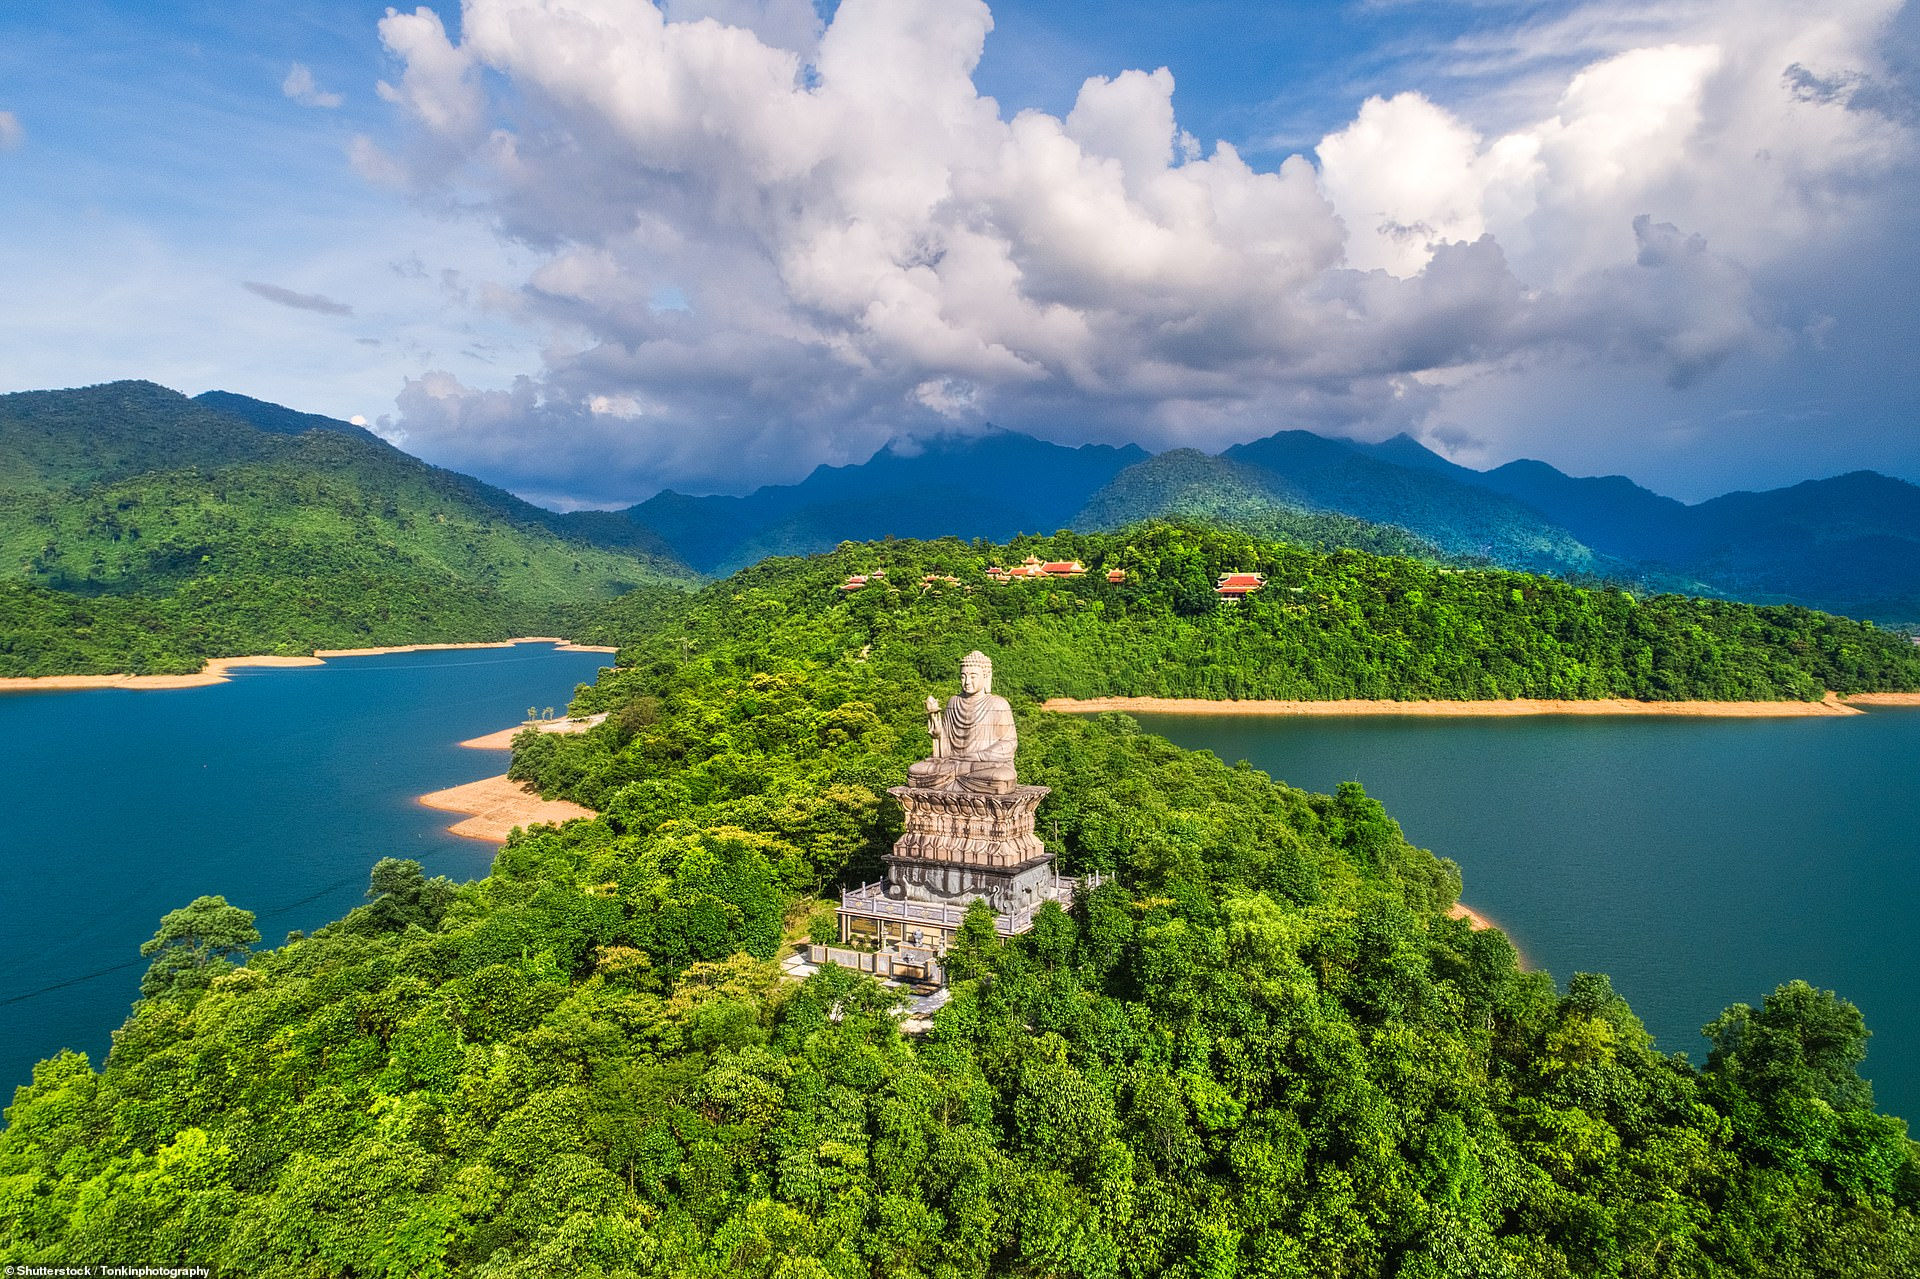 Thiền viện Trúc Lâm Bạch Mã nằm giữa hồ Truồi, gần núi Bạch Mã thuộc huyện Phú Lộc, Thừa Thiên Huế được xây dựng năm 2006 trong bức ảnh chụp từ trên cao.